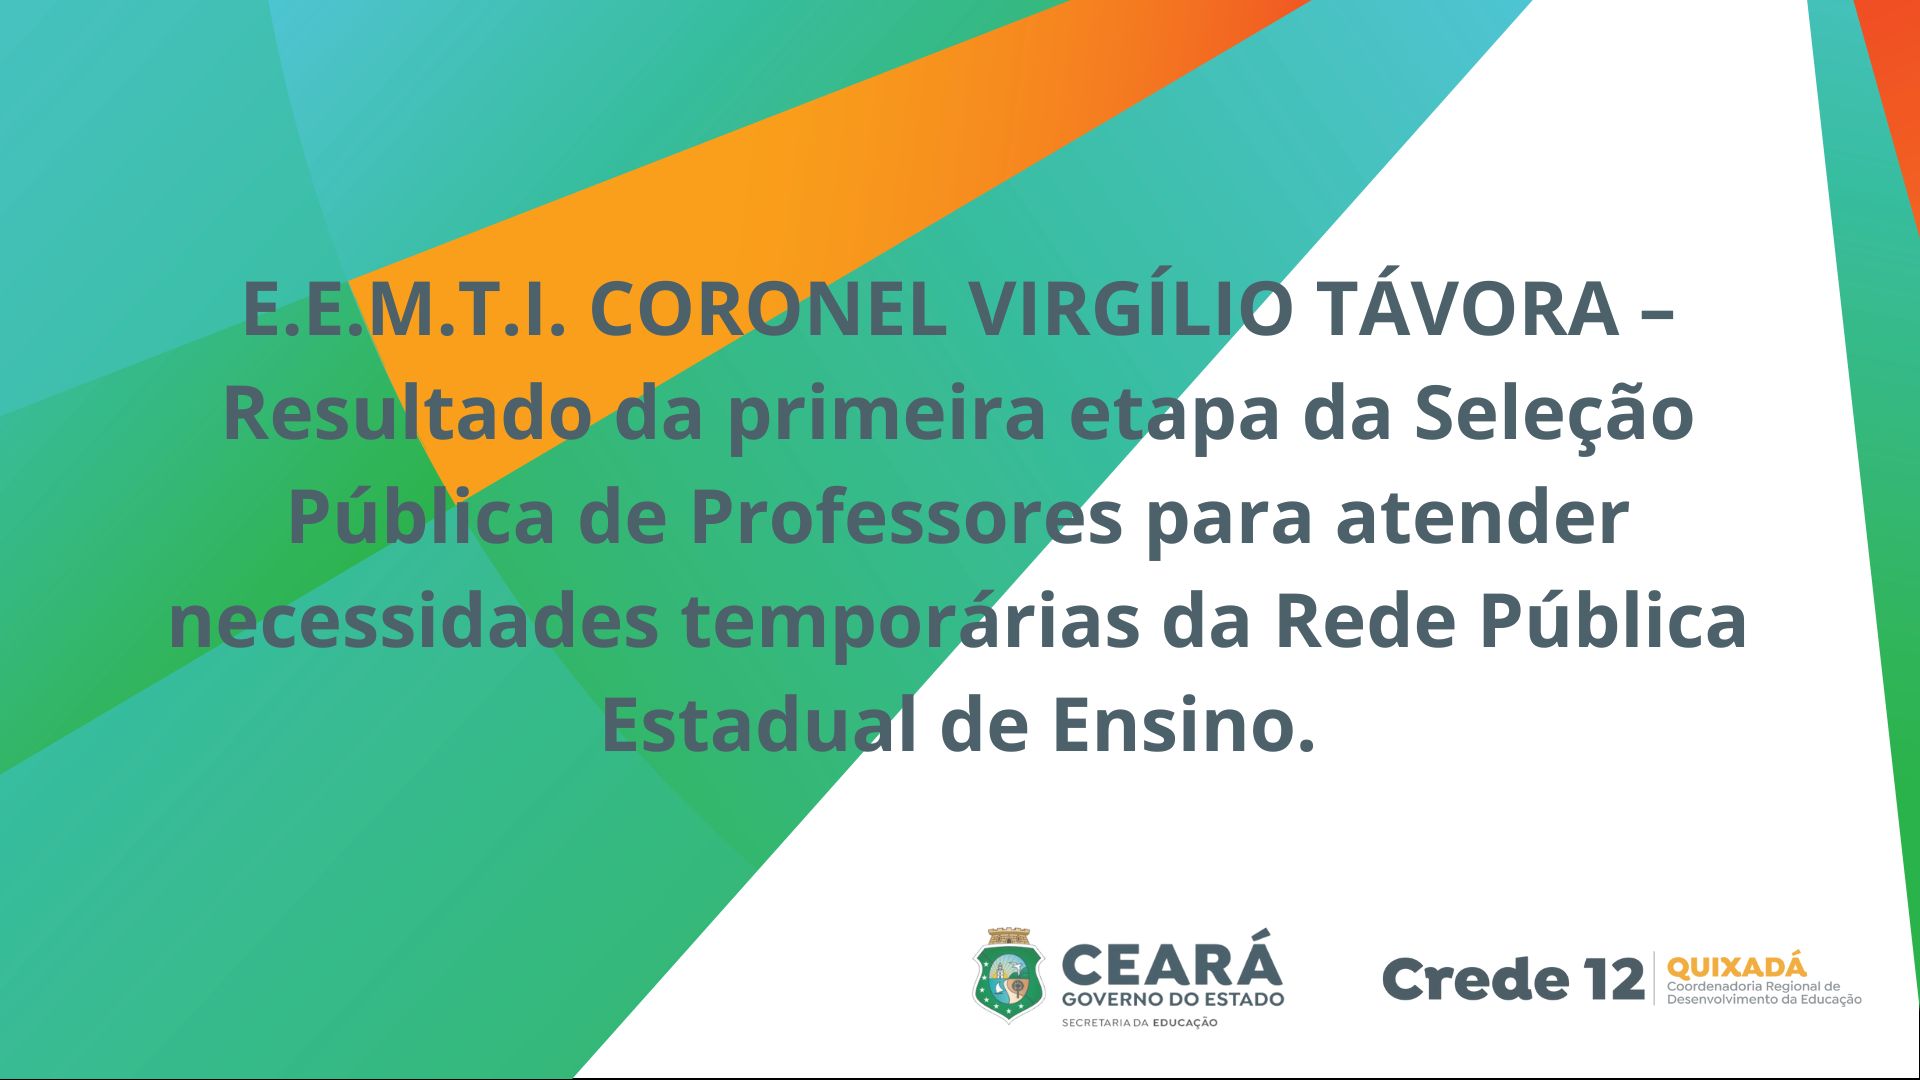 E.E.M.T.I. CORONEL VIRGÍLIO TÁVORA – Resultado da primeira etapa da Seleção Pública de Professores para atender necessidades temporárias da Rede Pública Estadual de Ensino.